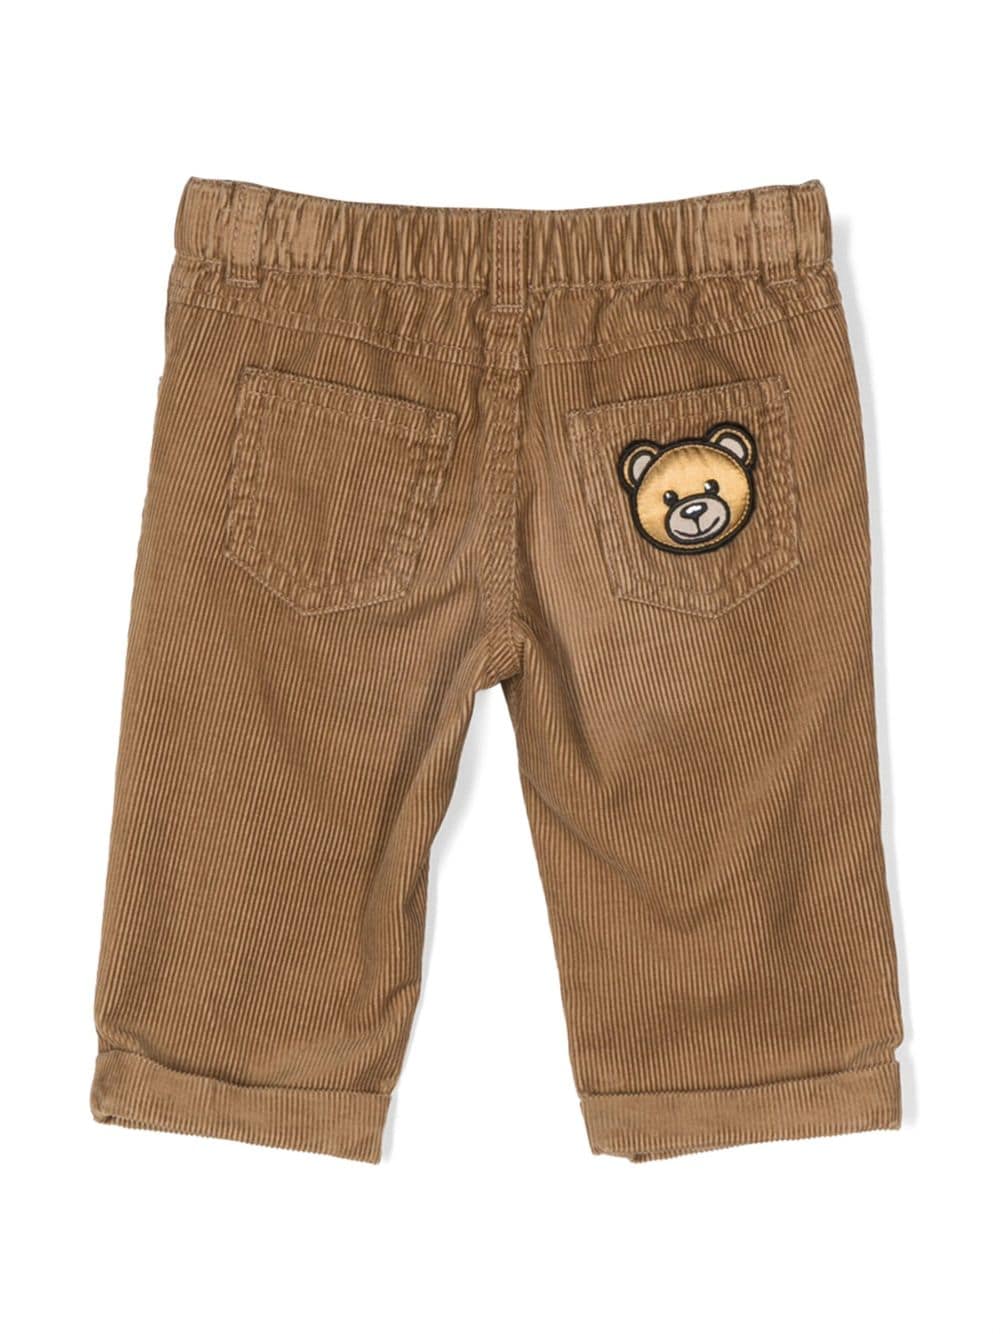 Pantaloni a coste con applicazione Teddy Bear - Rubino Kids